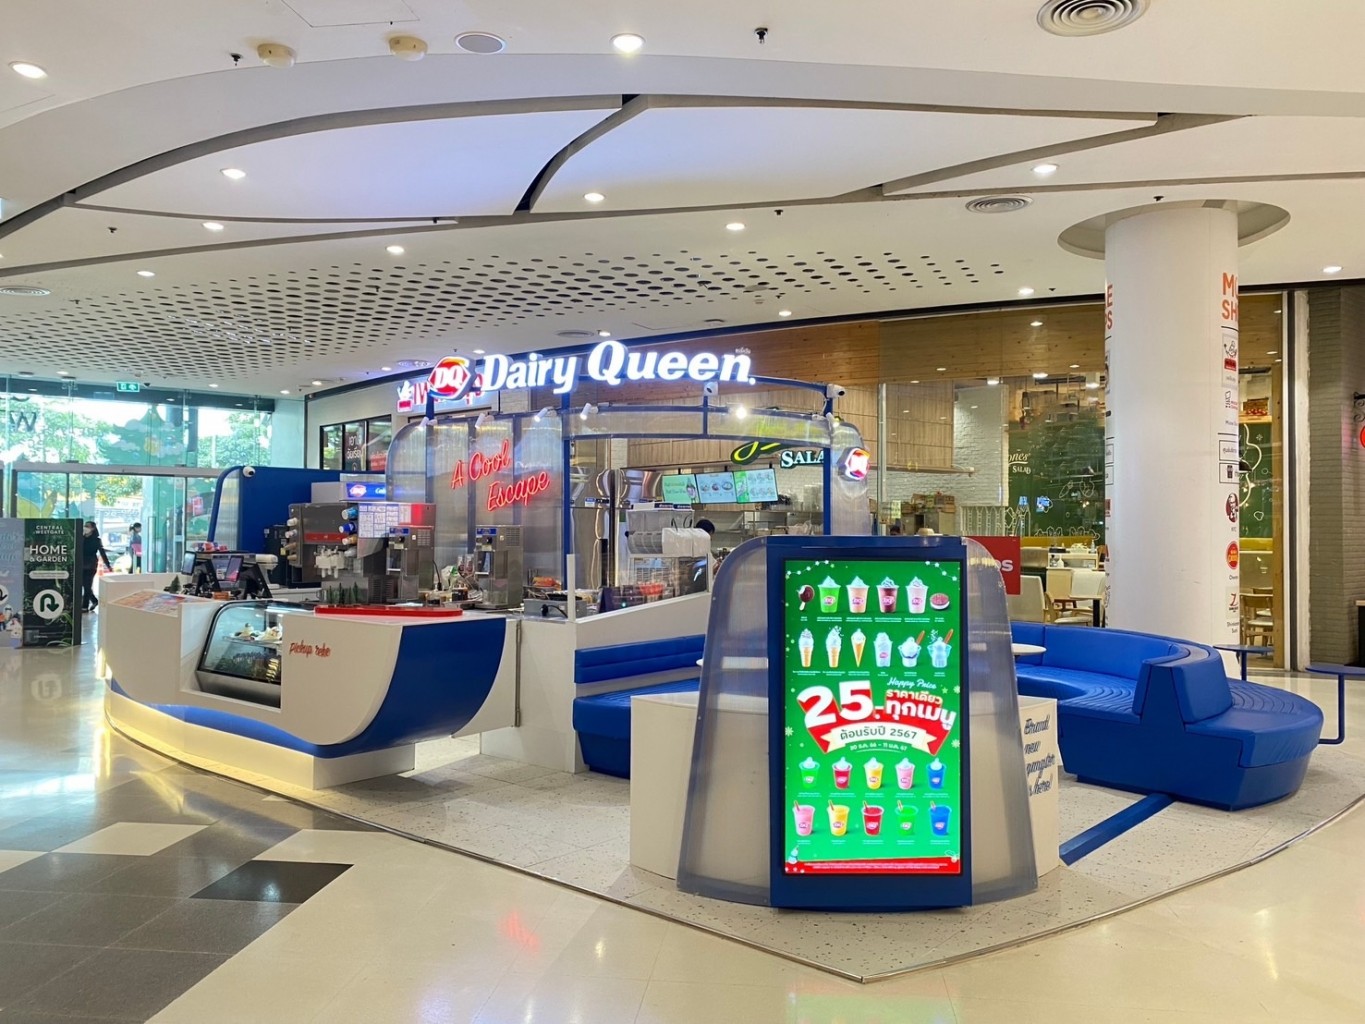 ‘dairy queen’ สู้ศึกร้านนั่งกิน เปิด ‘dq lounge’ เน้นเมนูใหม่ ถือทานยาก